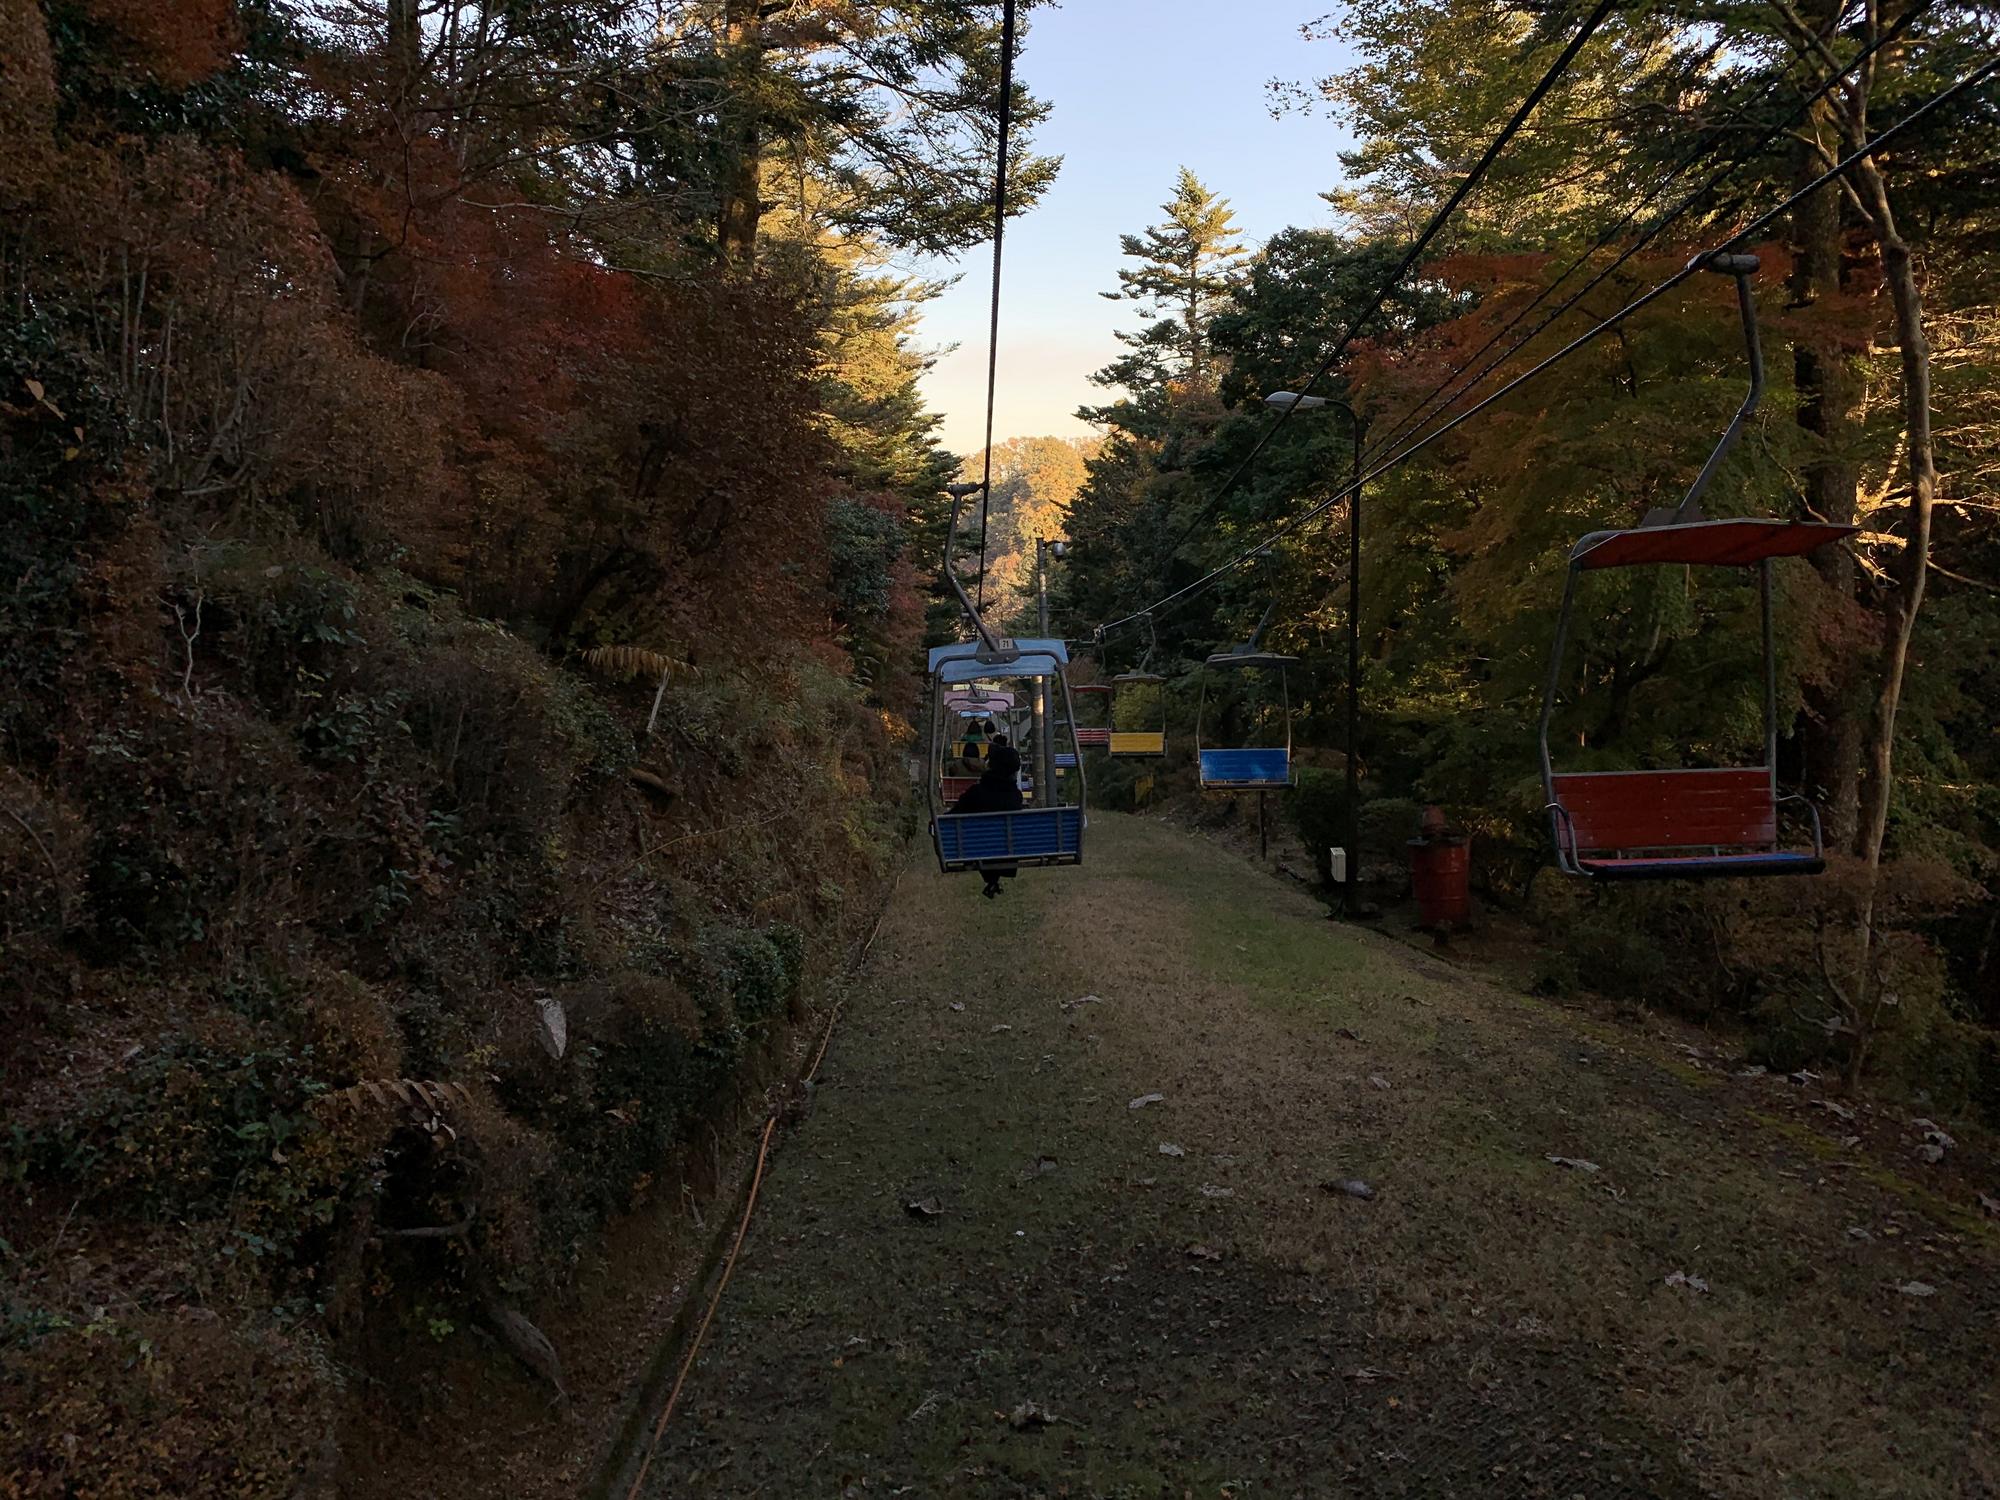 🇯🇵 Хатиодзи, Япония, ноябрь 2019.